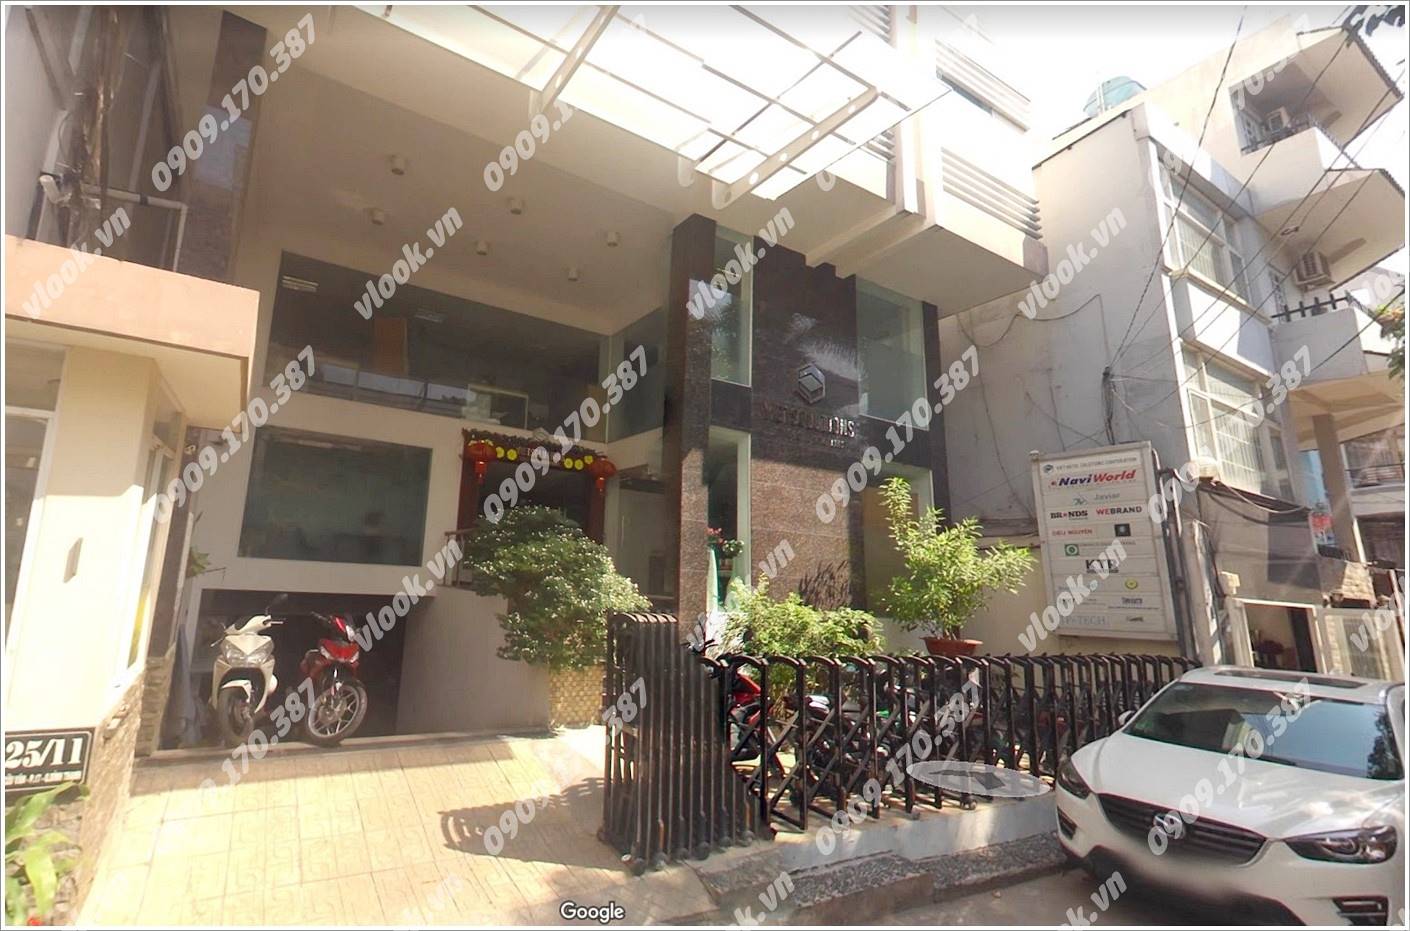 Cao ốc cho thuê văn phòng tòa nhà Viet Solution Building, Nguyễn Cửu Vân, Quận Bình Thạnh, TPHCM - vlook.vn